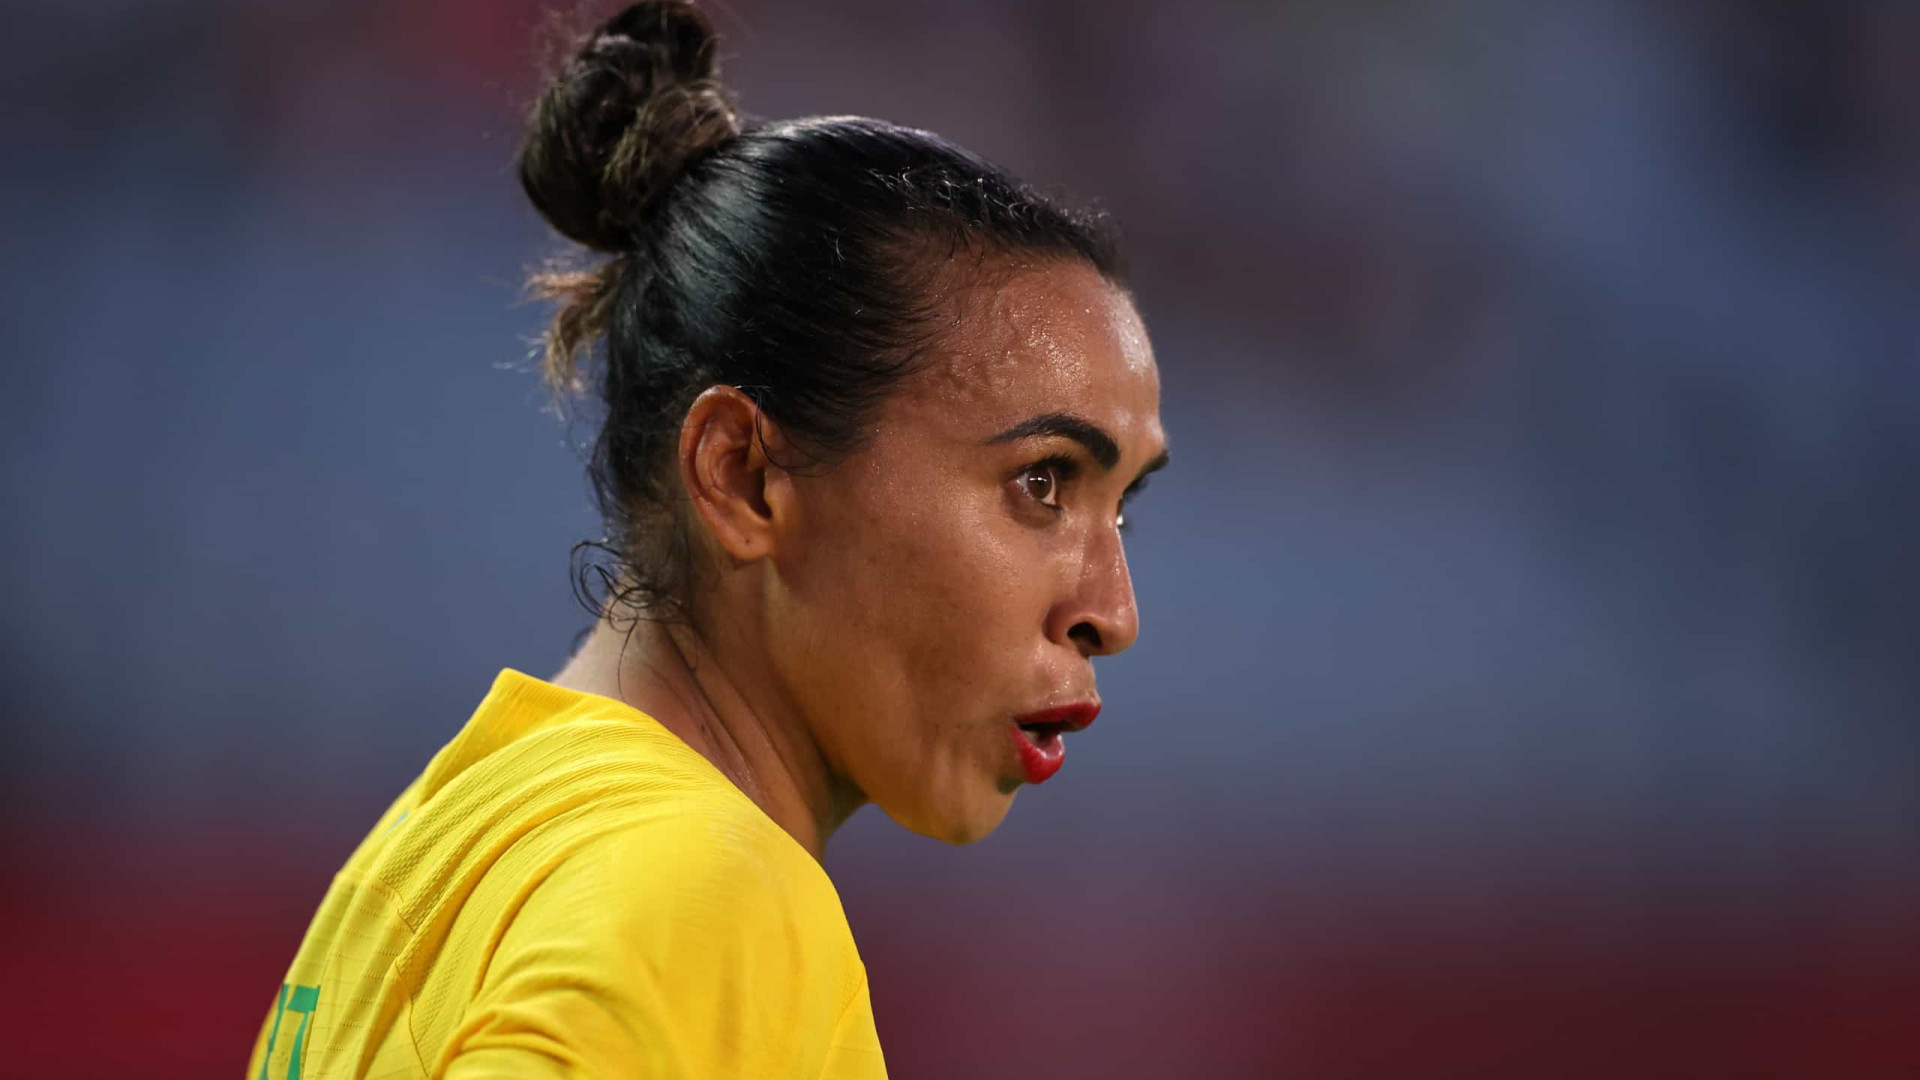 'Futebol feminino não acaba aqui', diz Marta após eliminação do Brasil em Tóquio